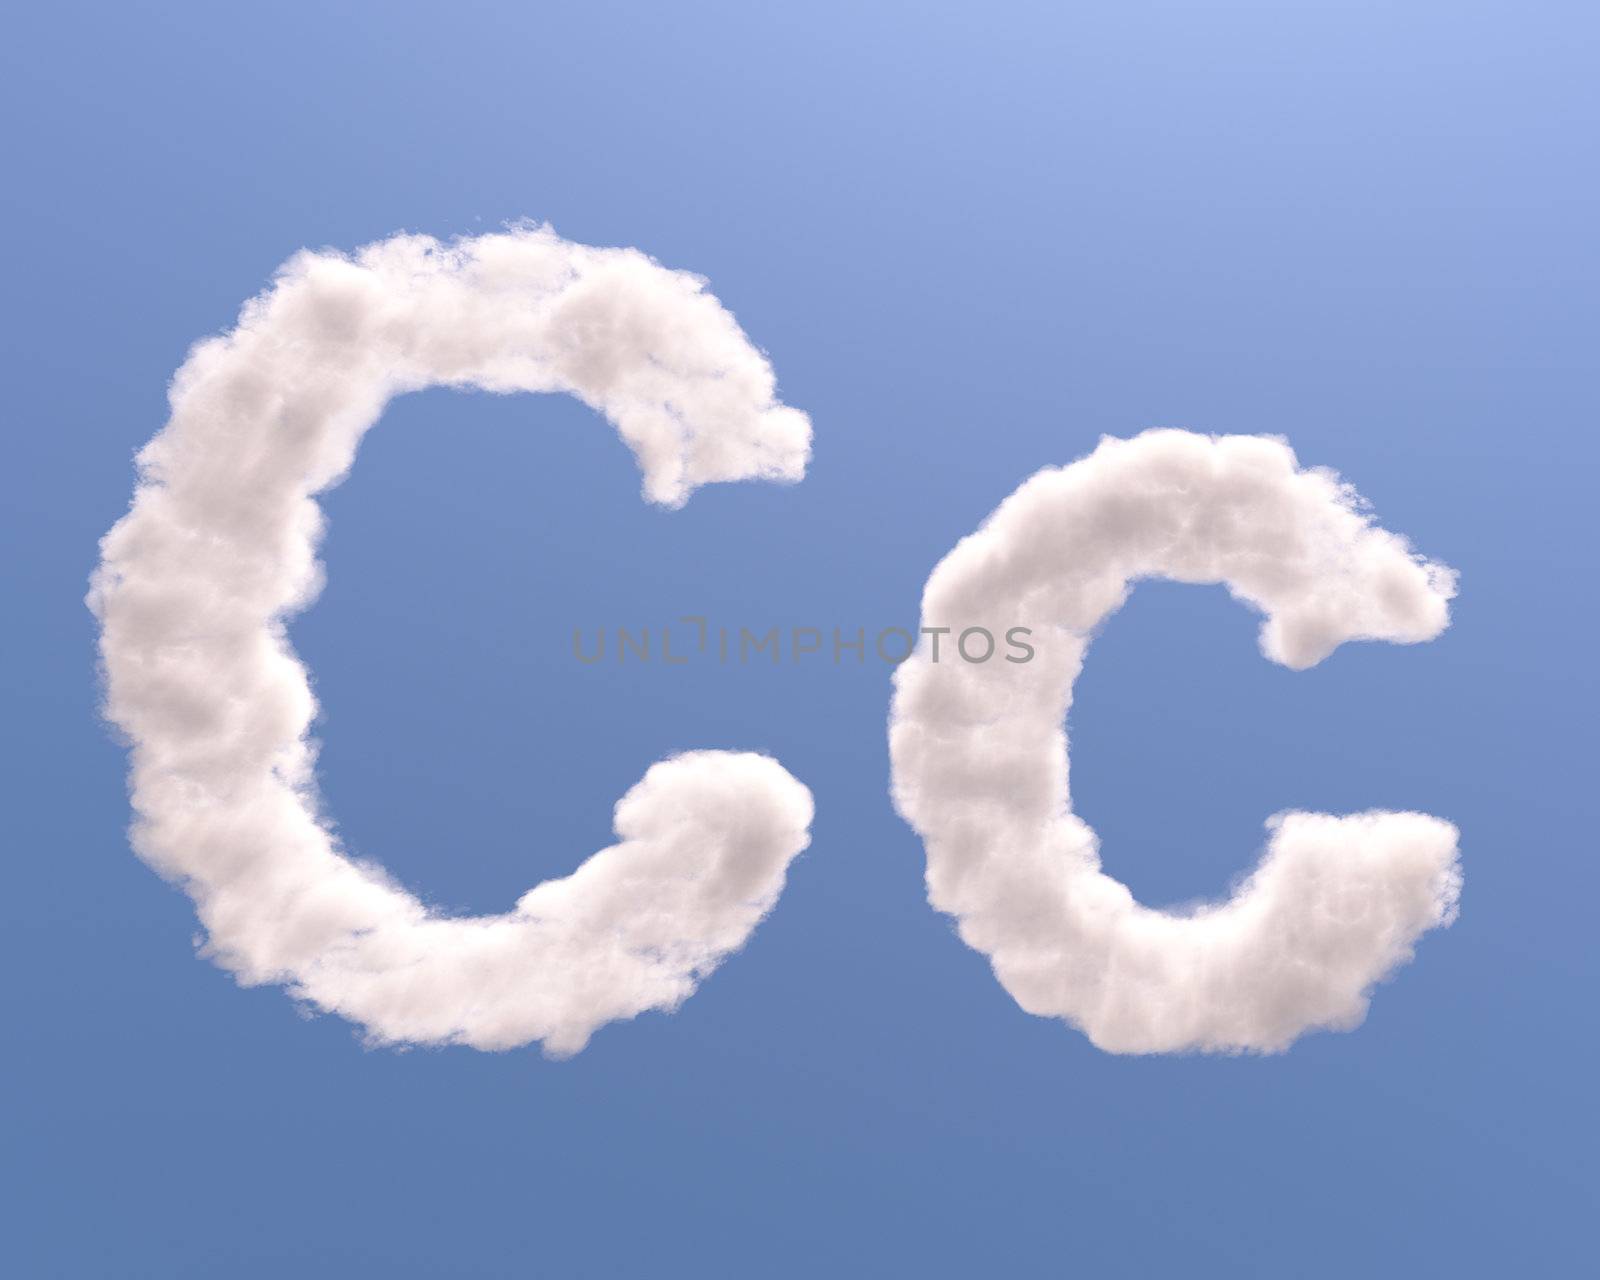 Letter C cloud shape by Zelfit